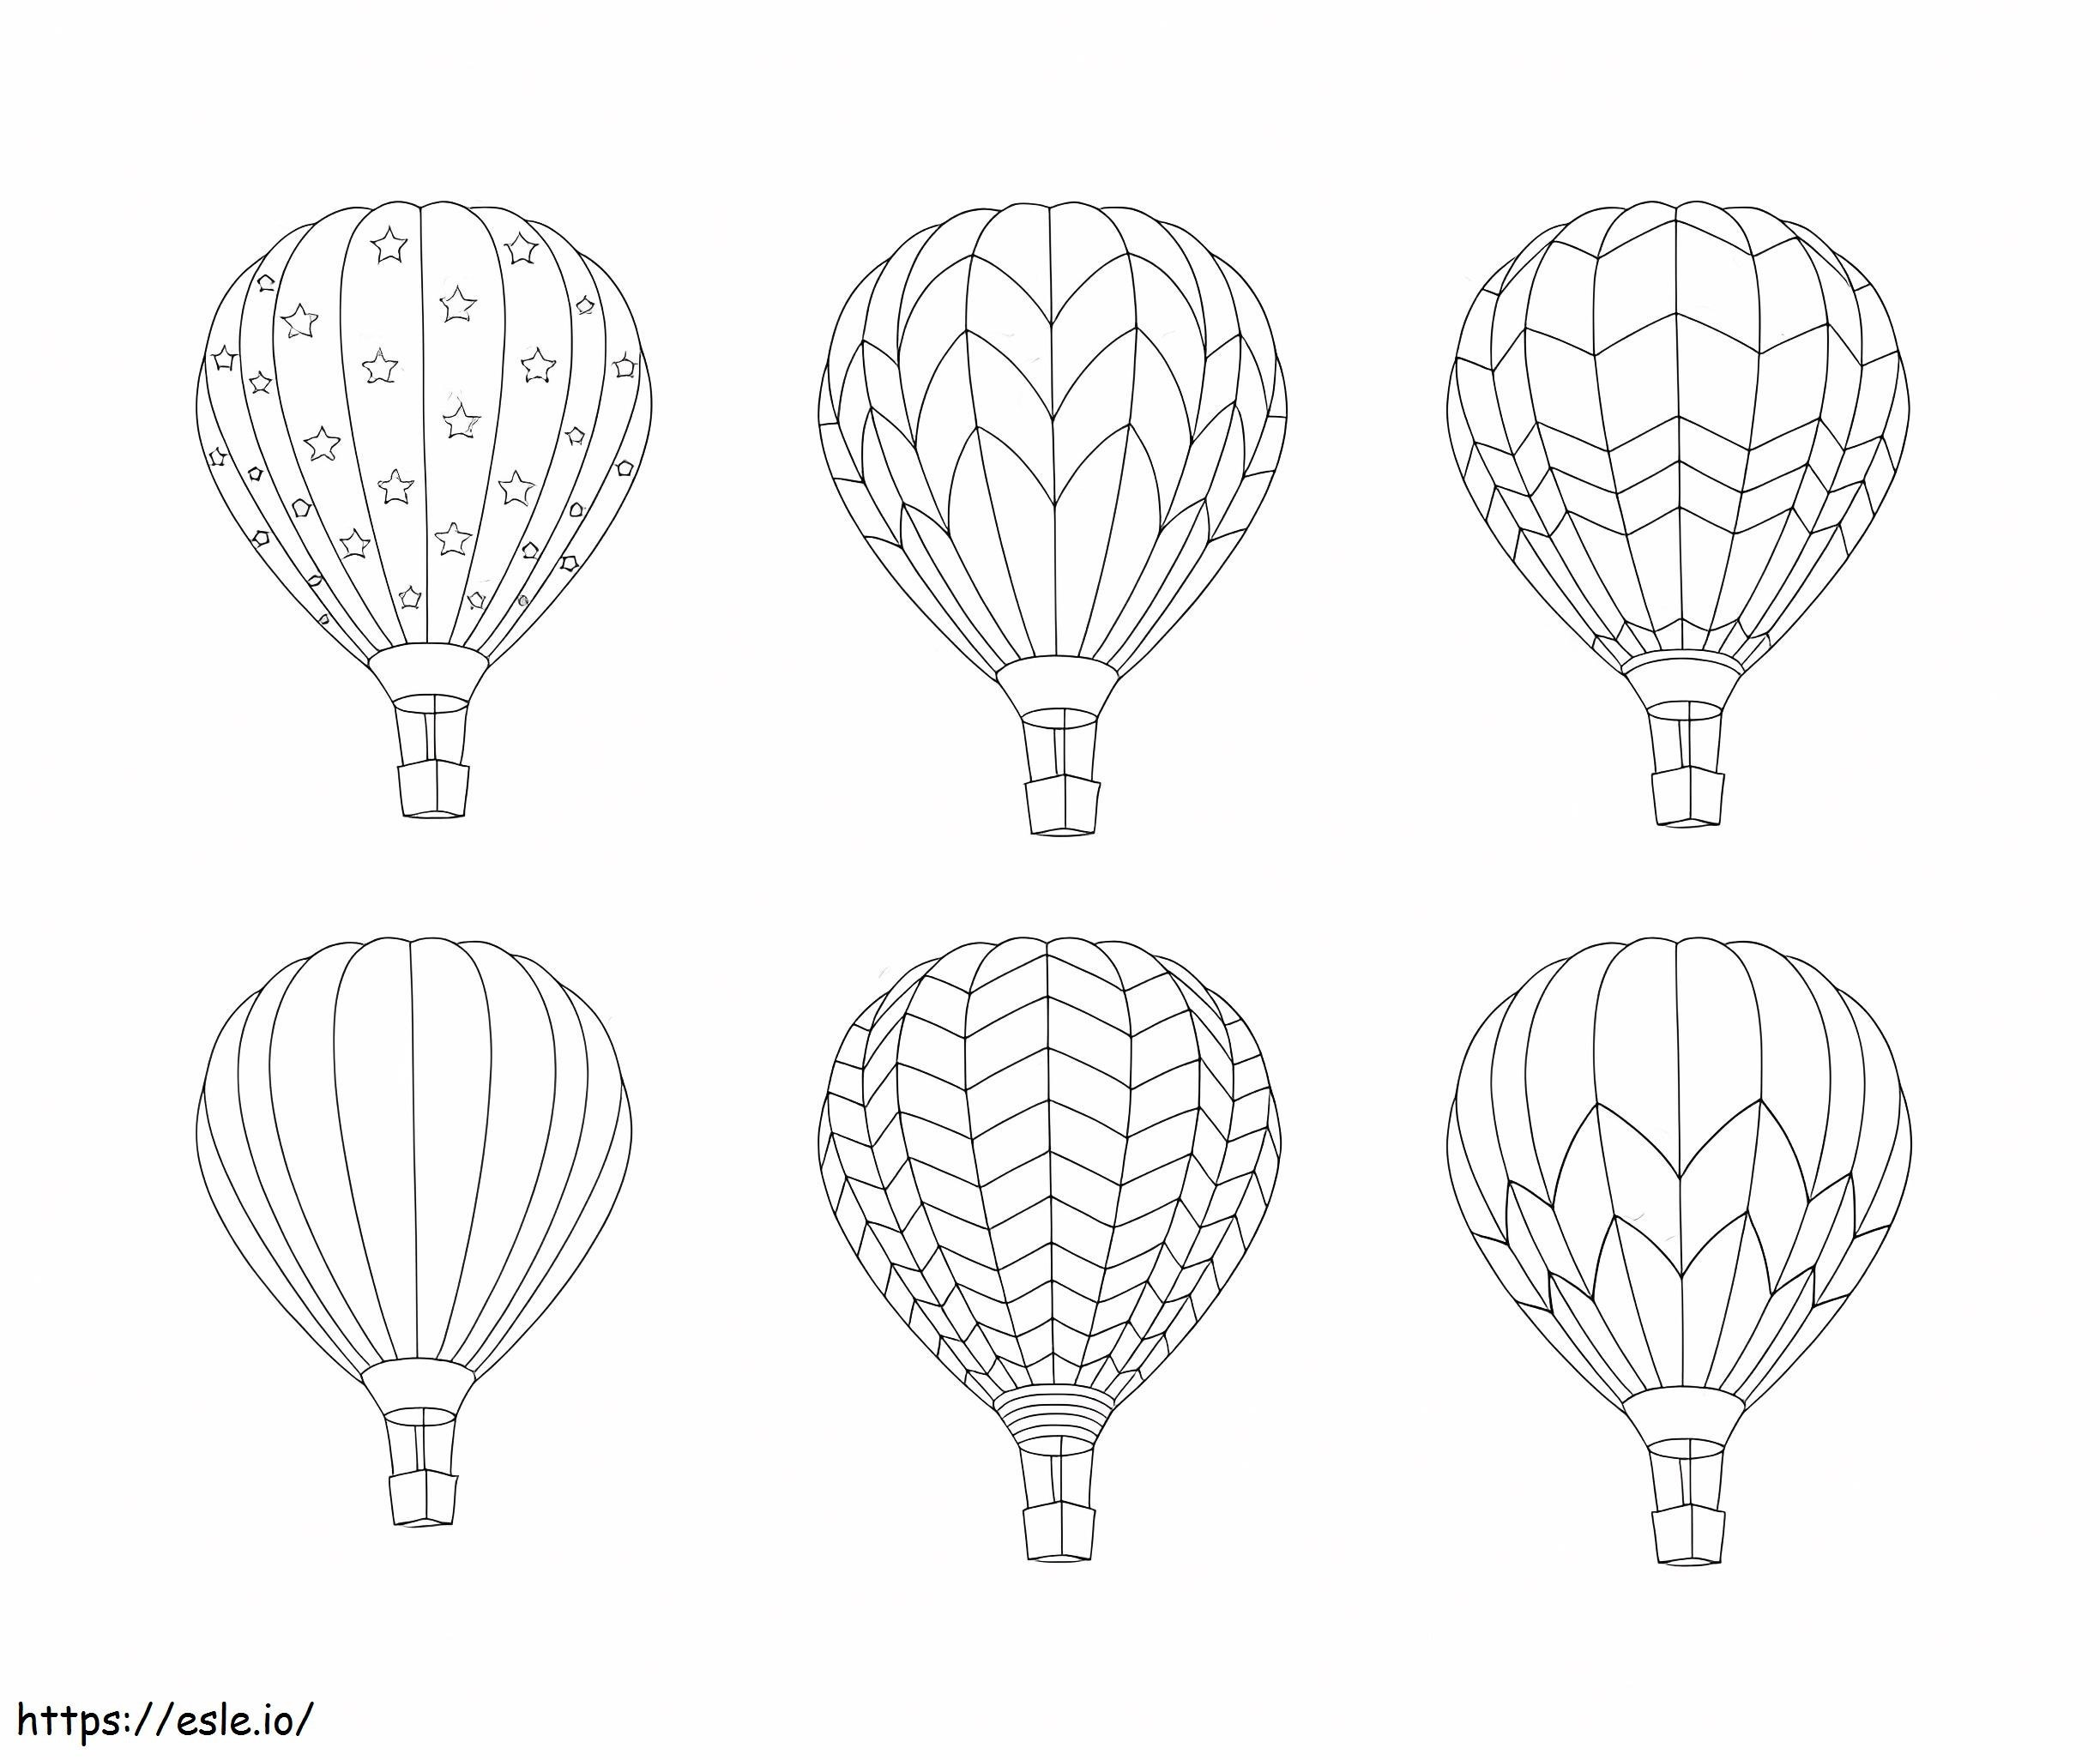 Seis globos aerostáticos para colorear